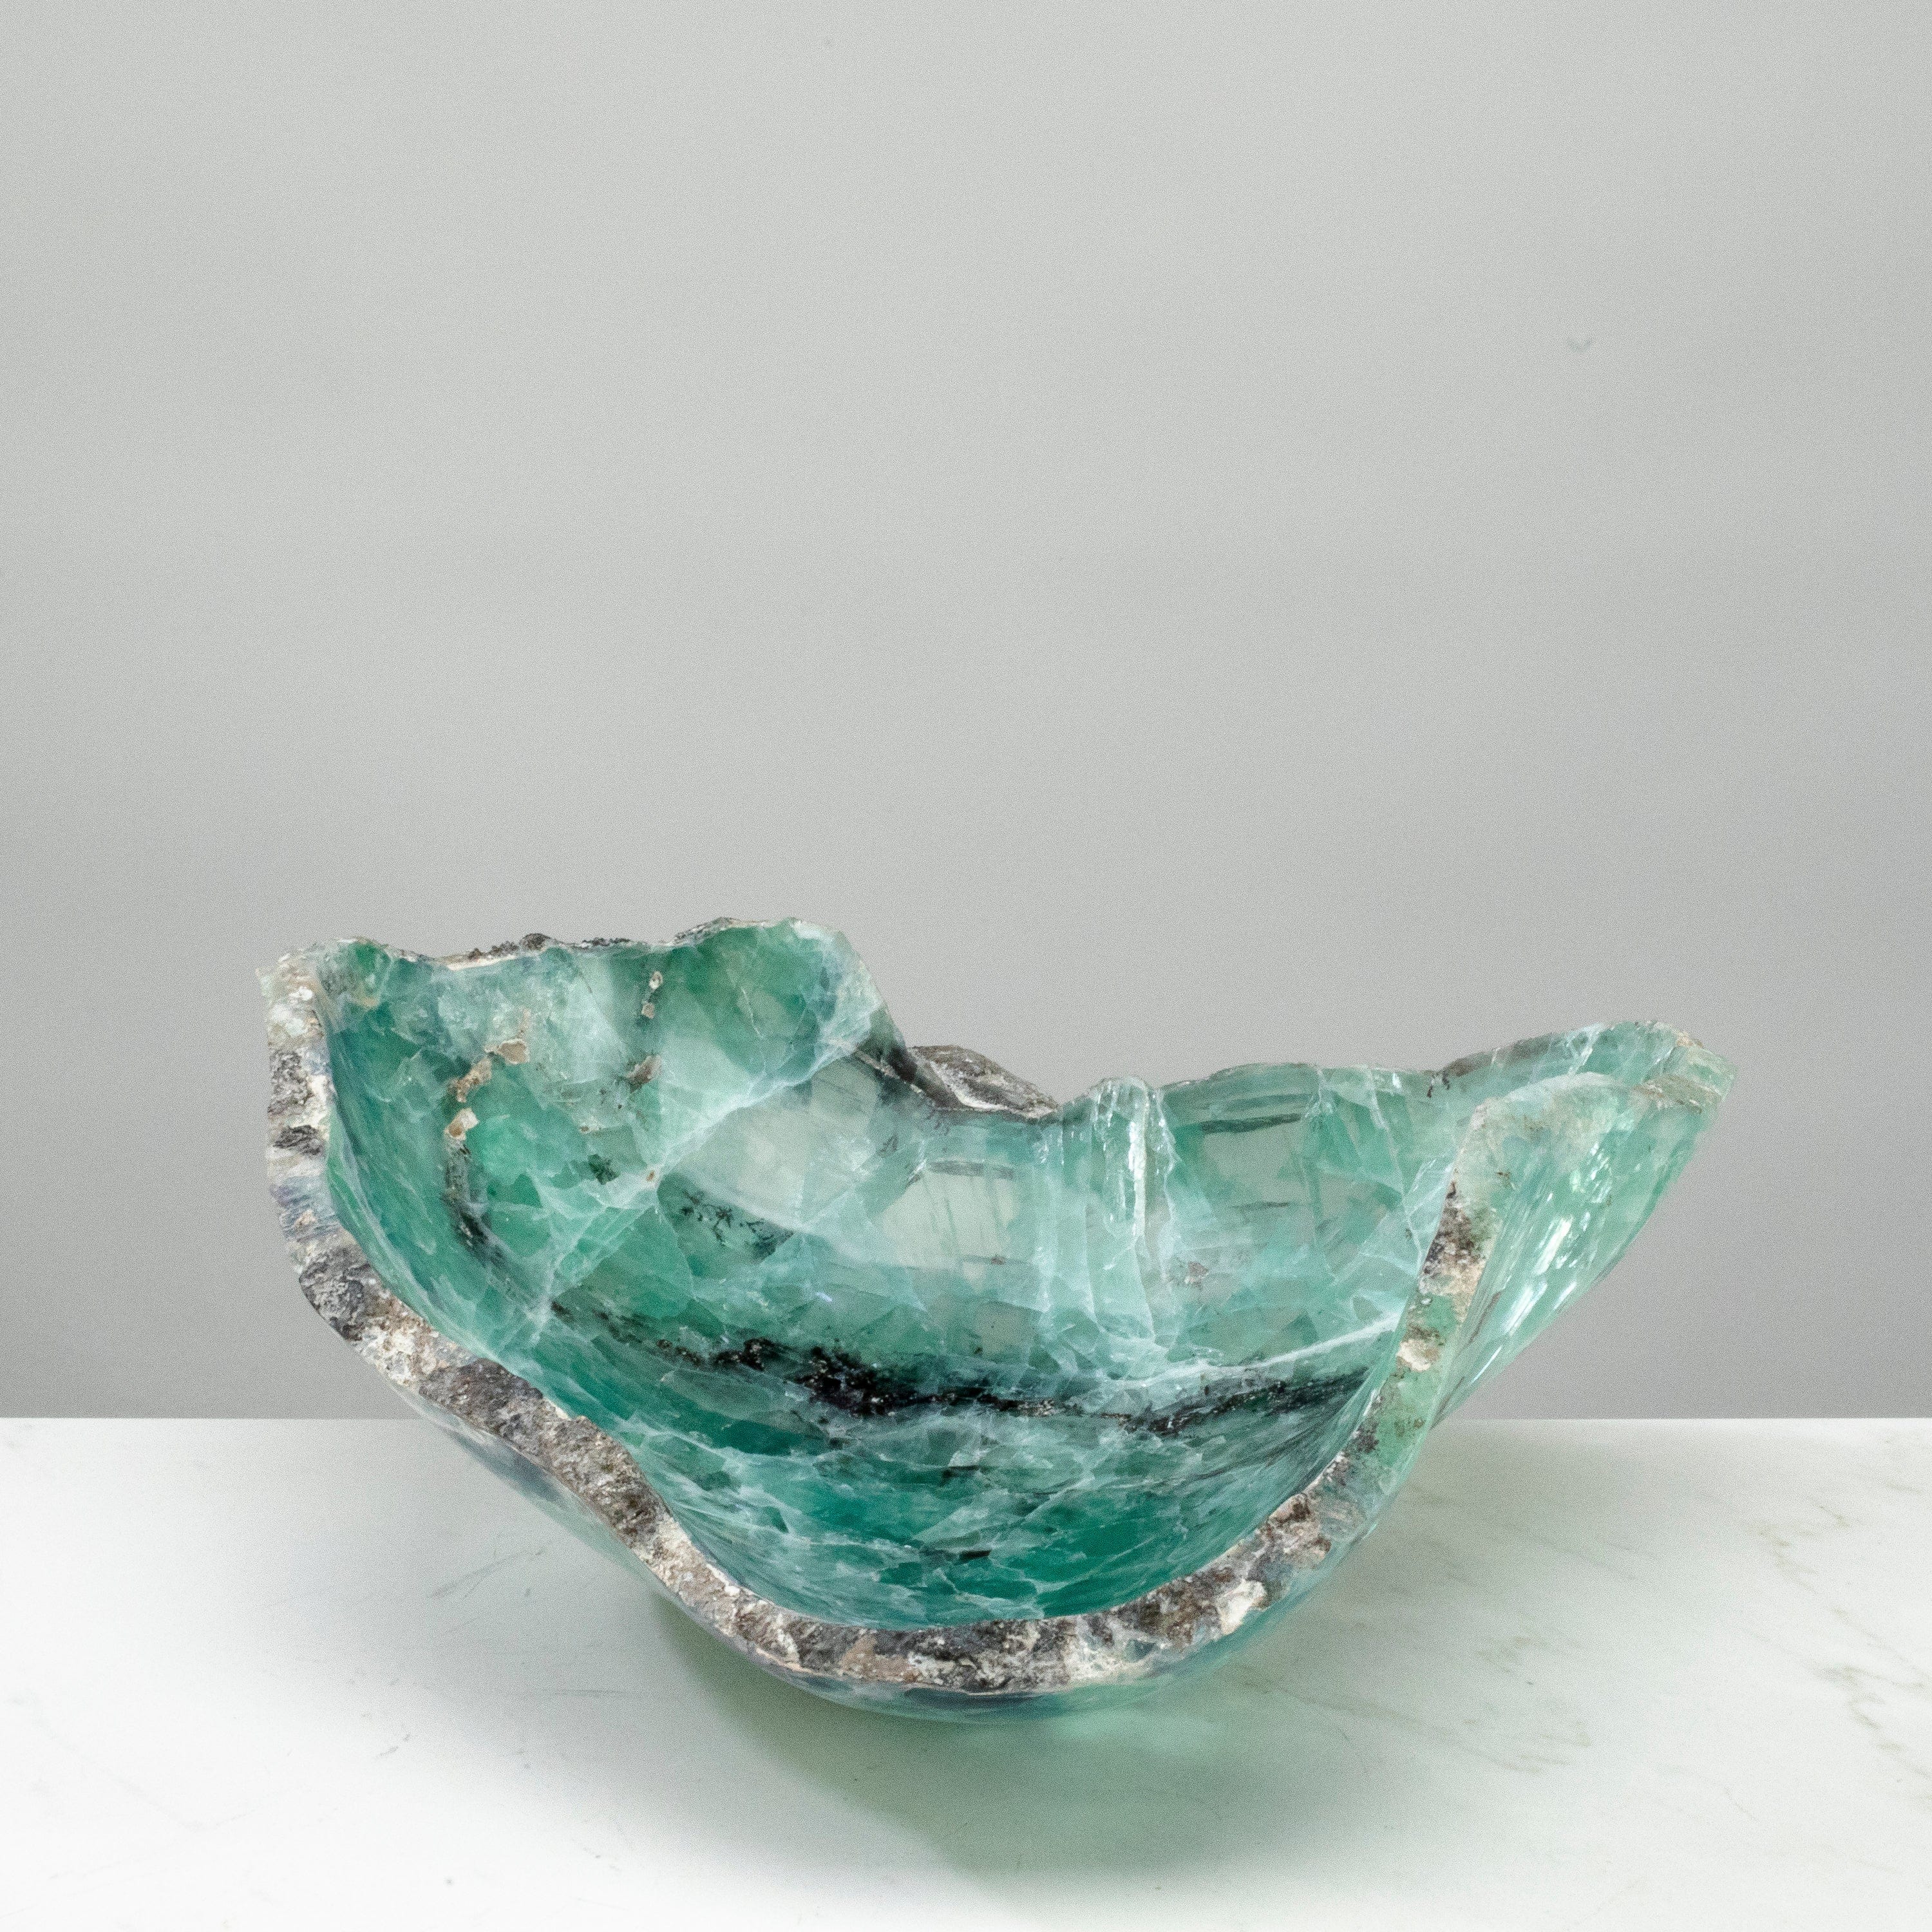 KALIFANO Gemstone Bowls Natural Blue / Green Fluorite Bowl 12" BFL7800.002